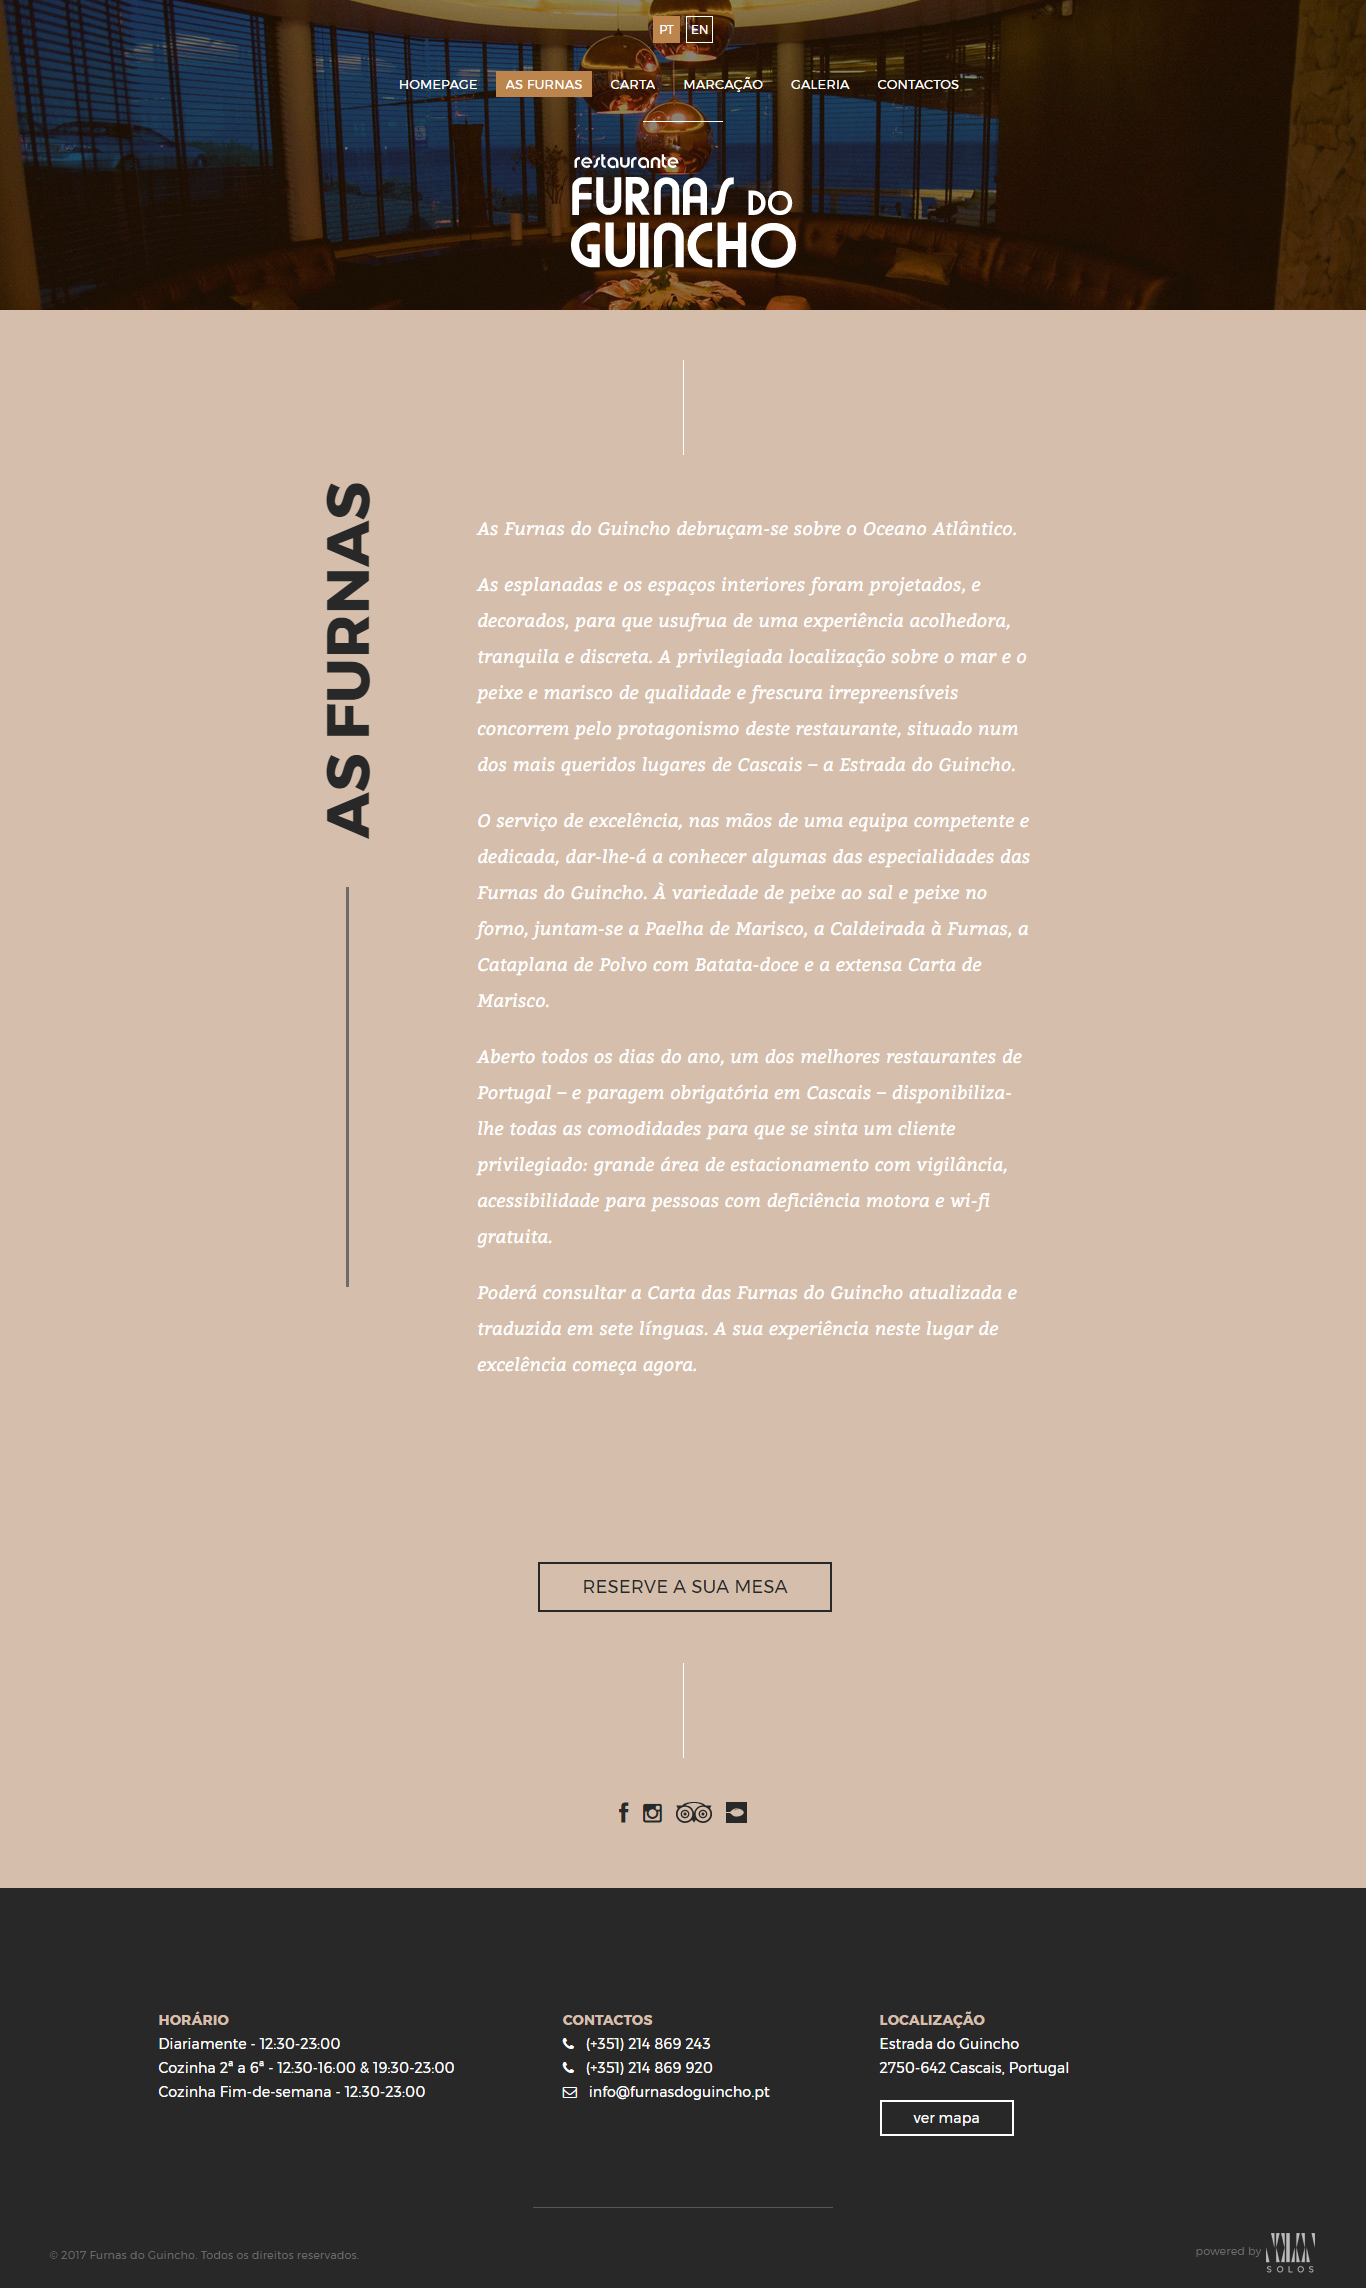 Furnas do Guincho | Website e marketing digital